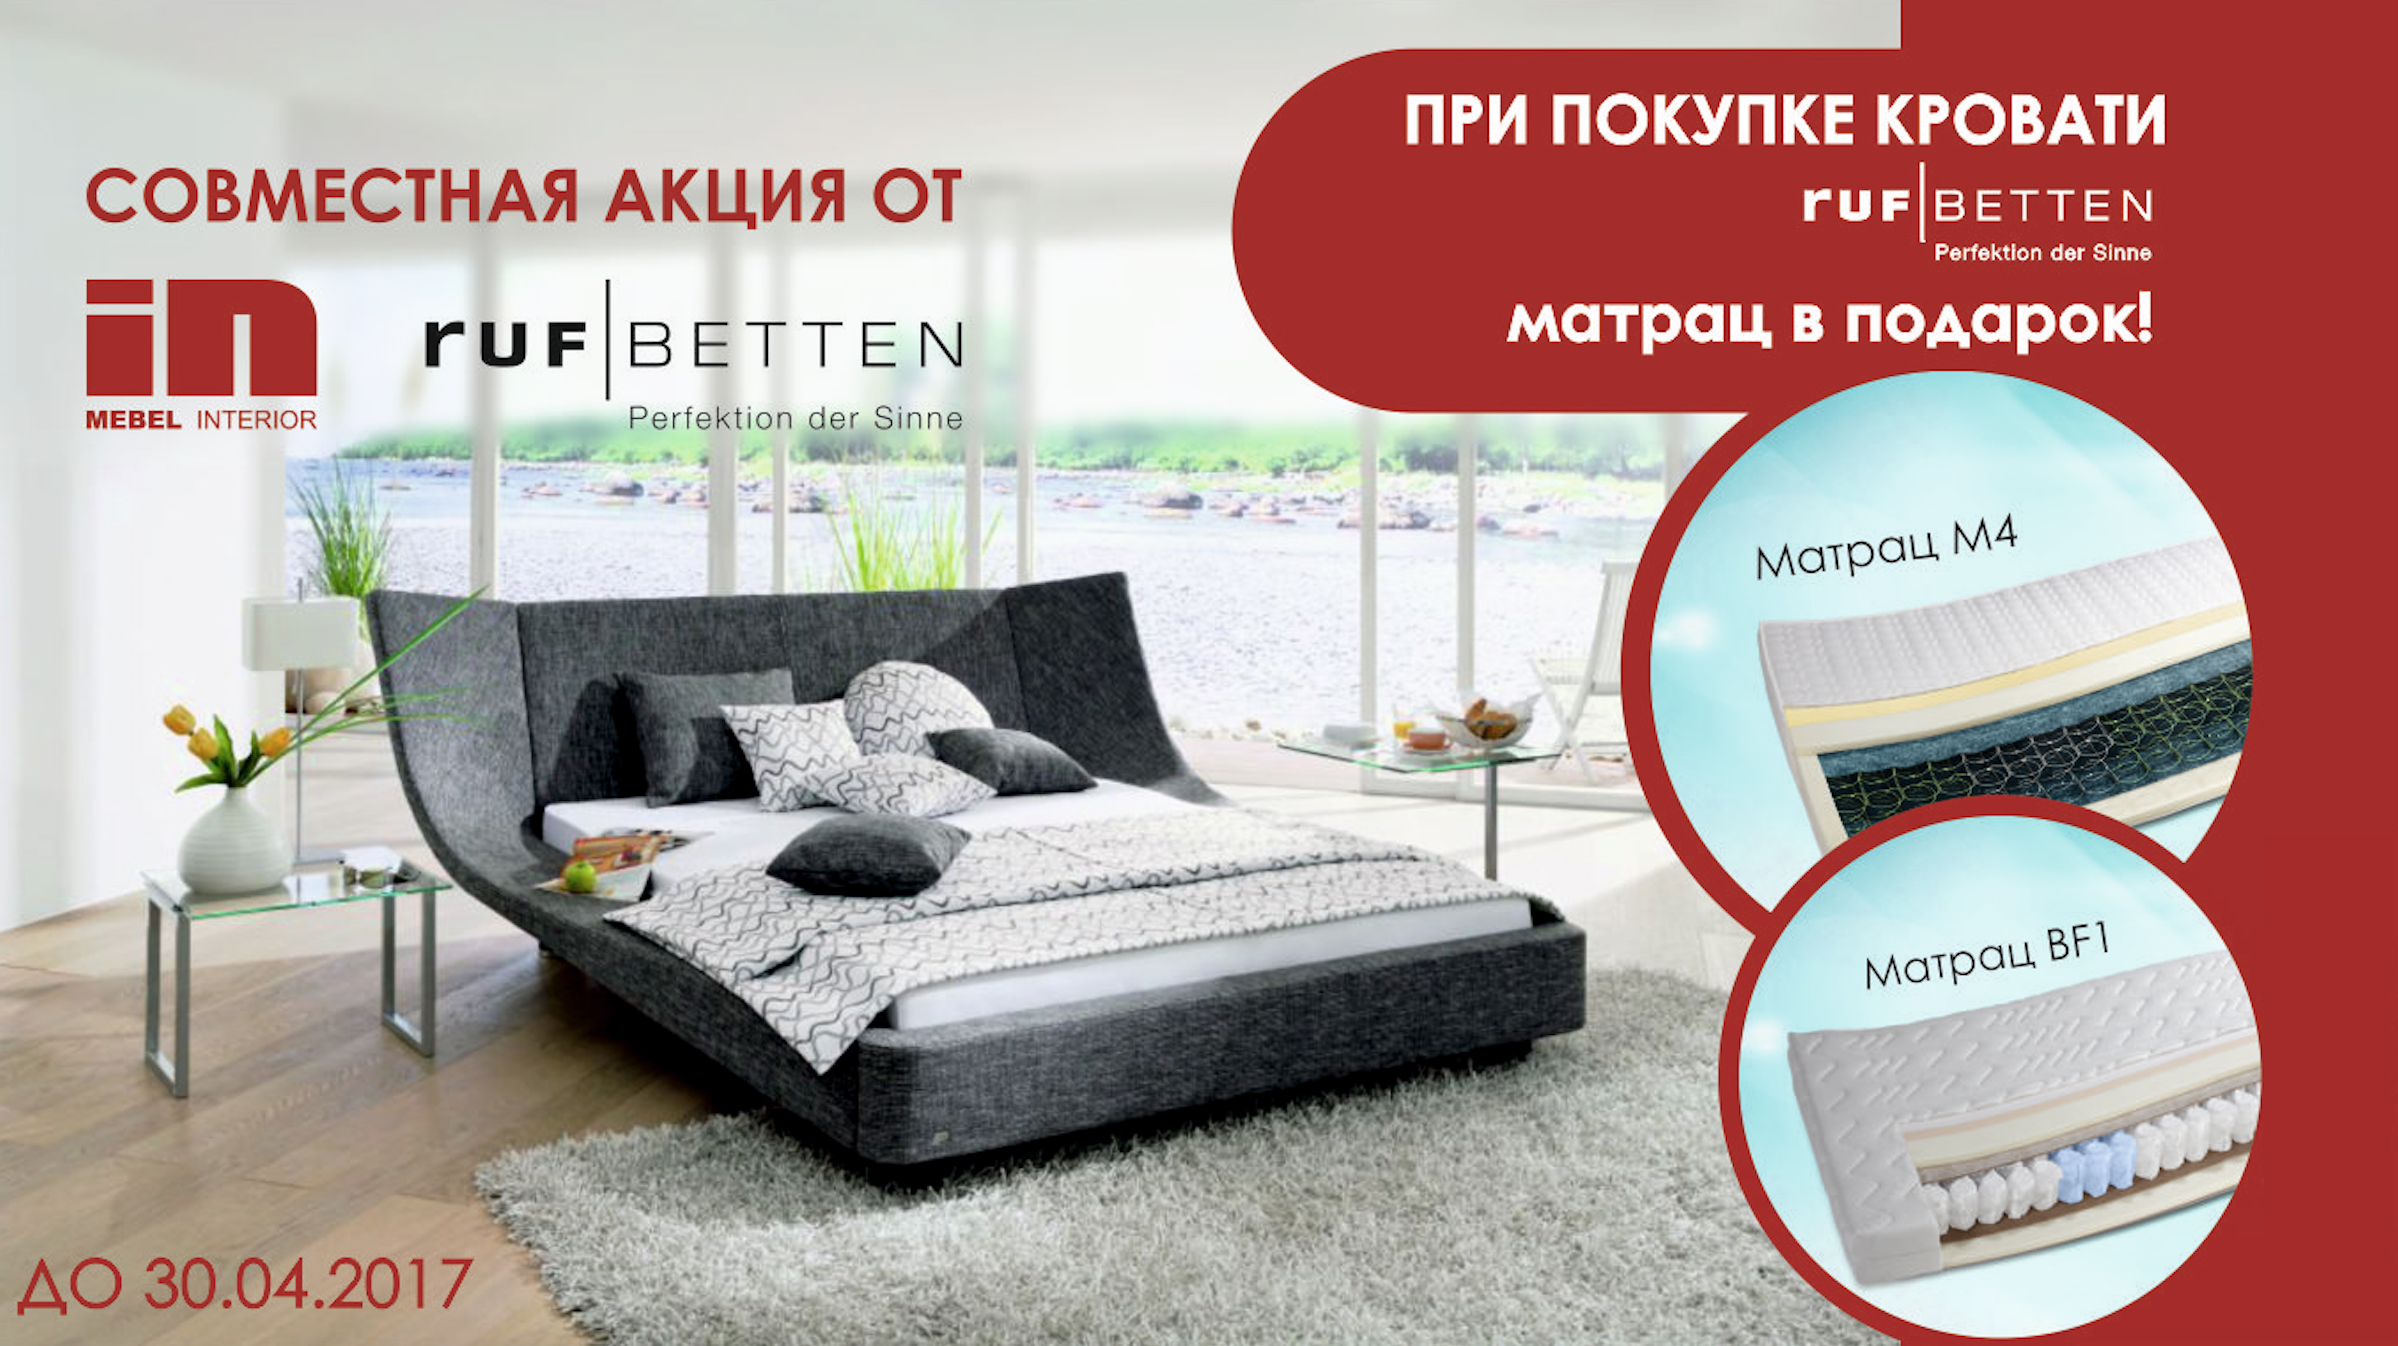 RUF Betten и Mebel Interior дарит матрац М4 или BF1 при покупке кровати